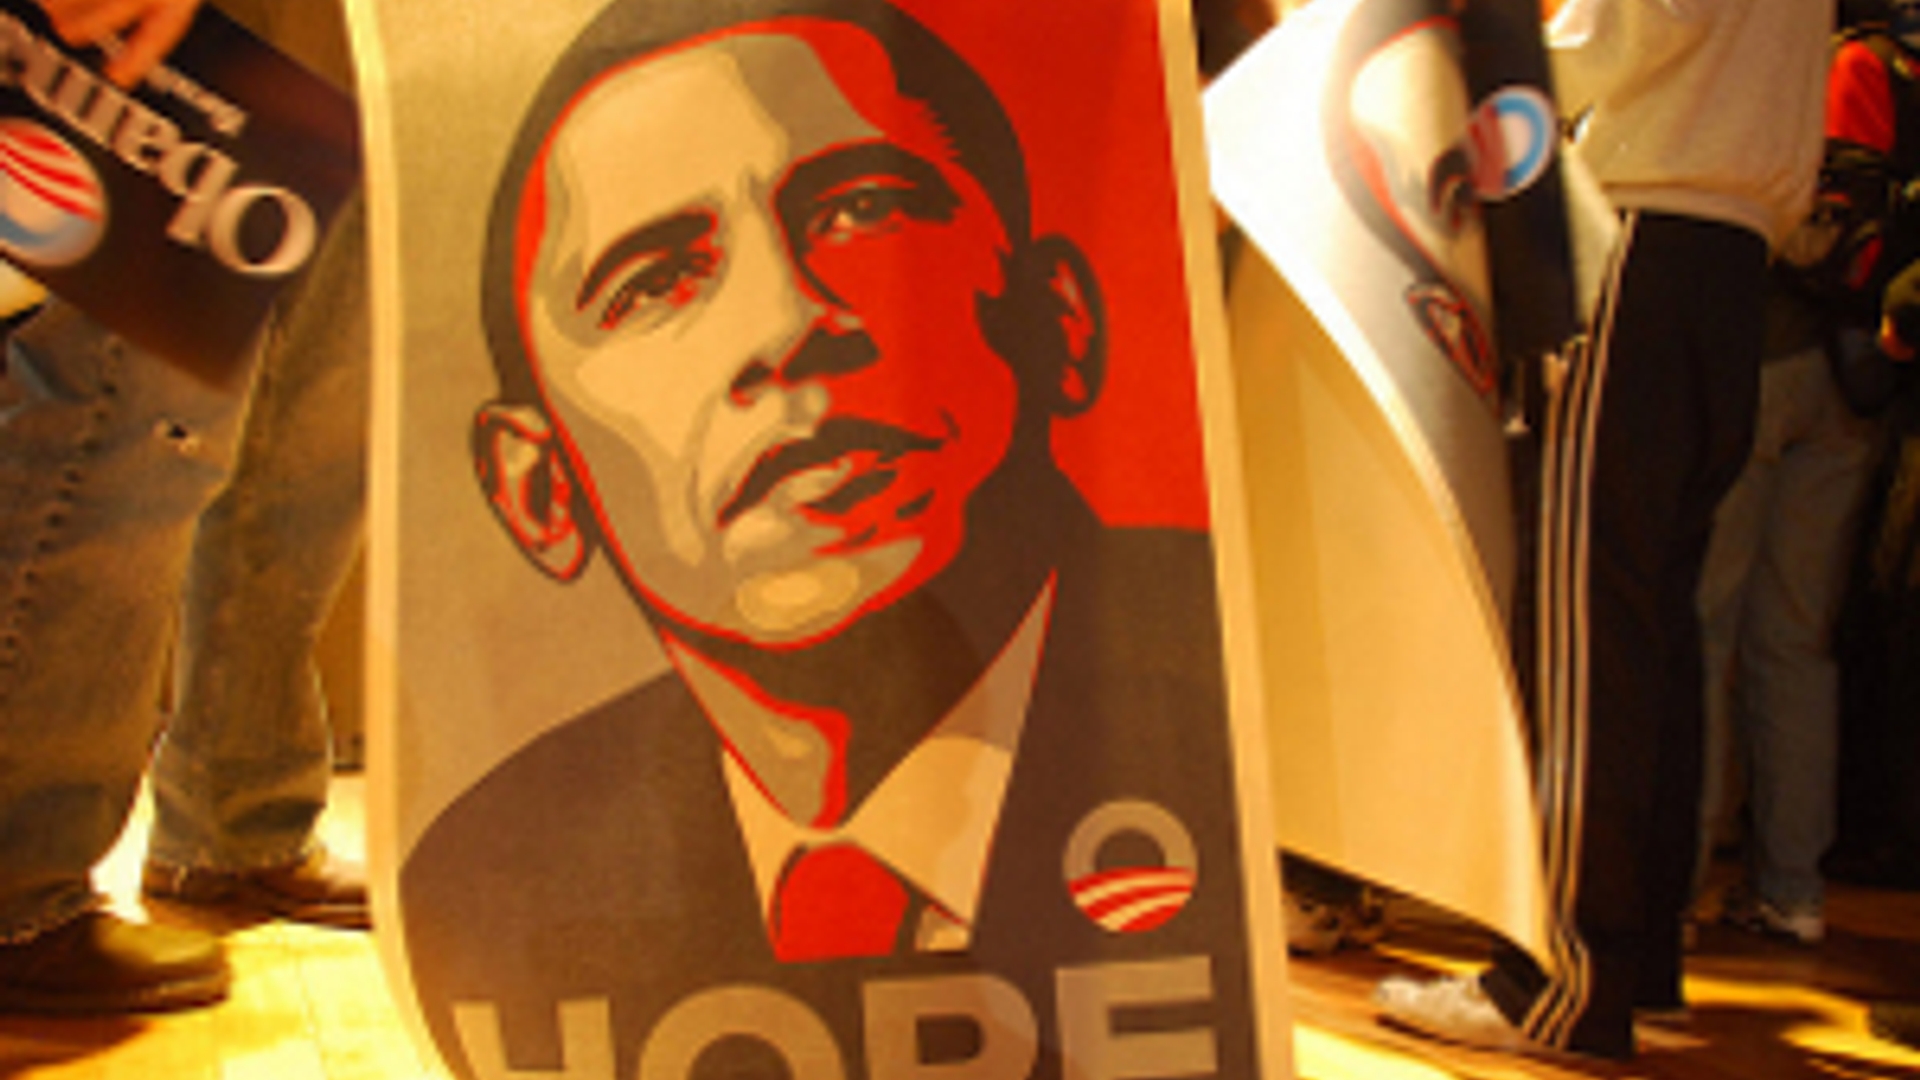 Flickr_obama_poster_300.jpg